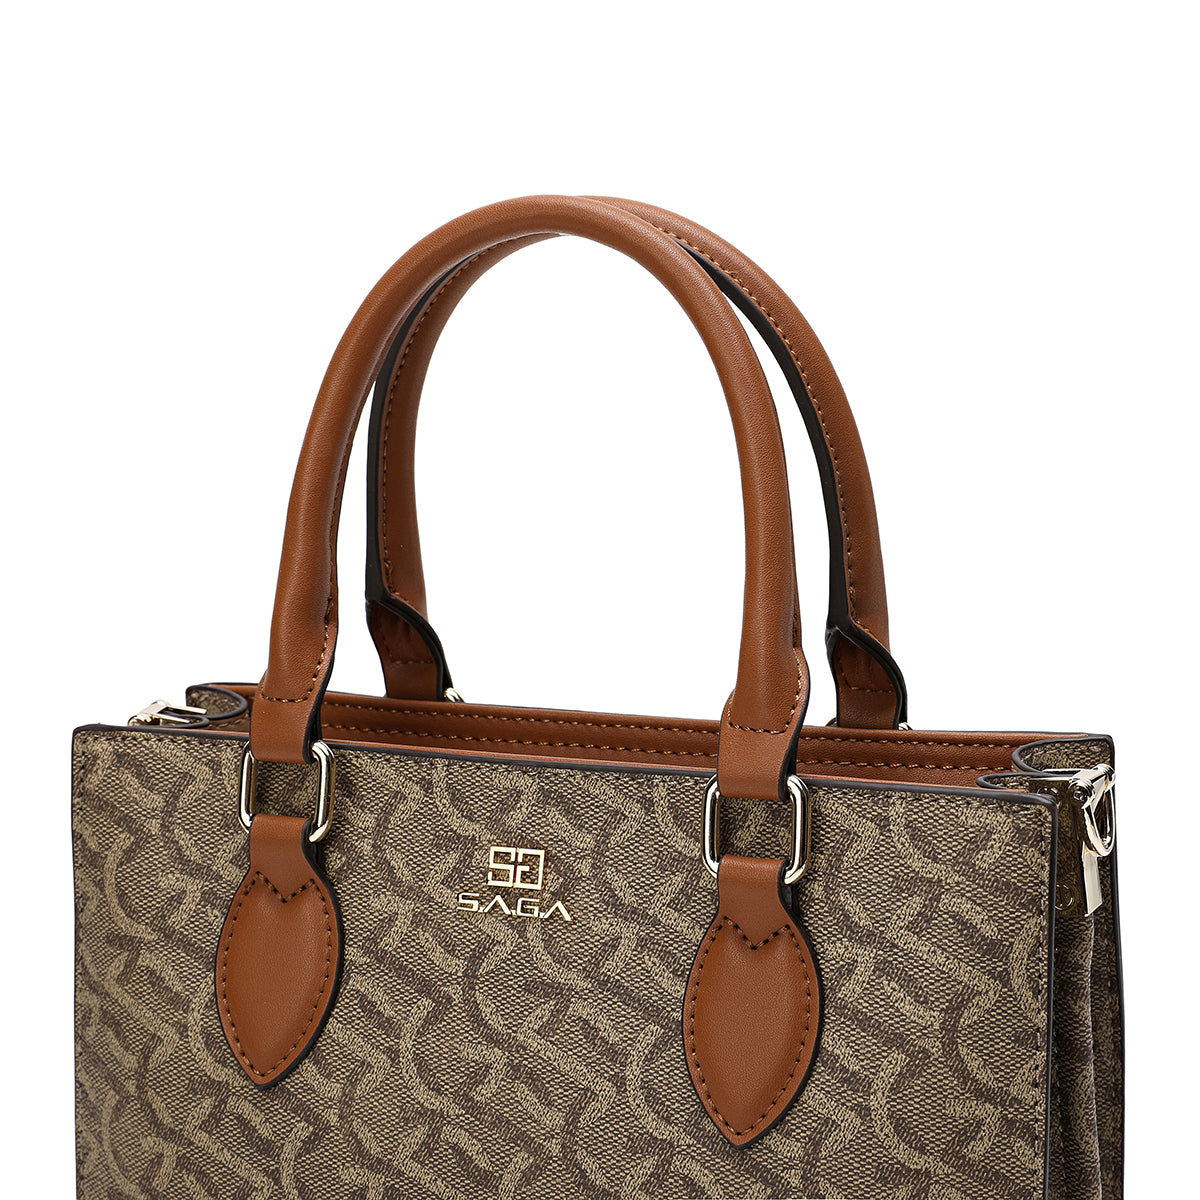 A spacious handbag with a simple and elegant design